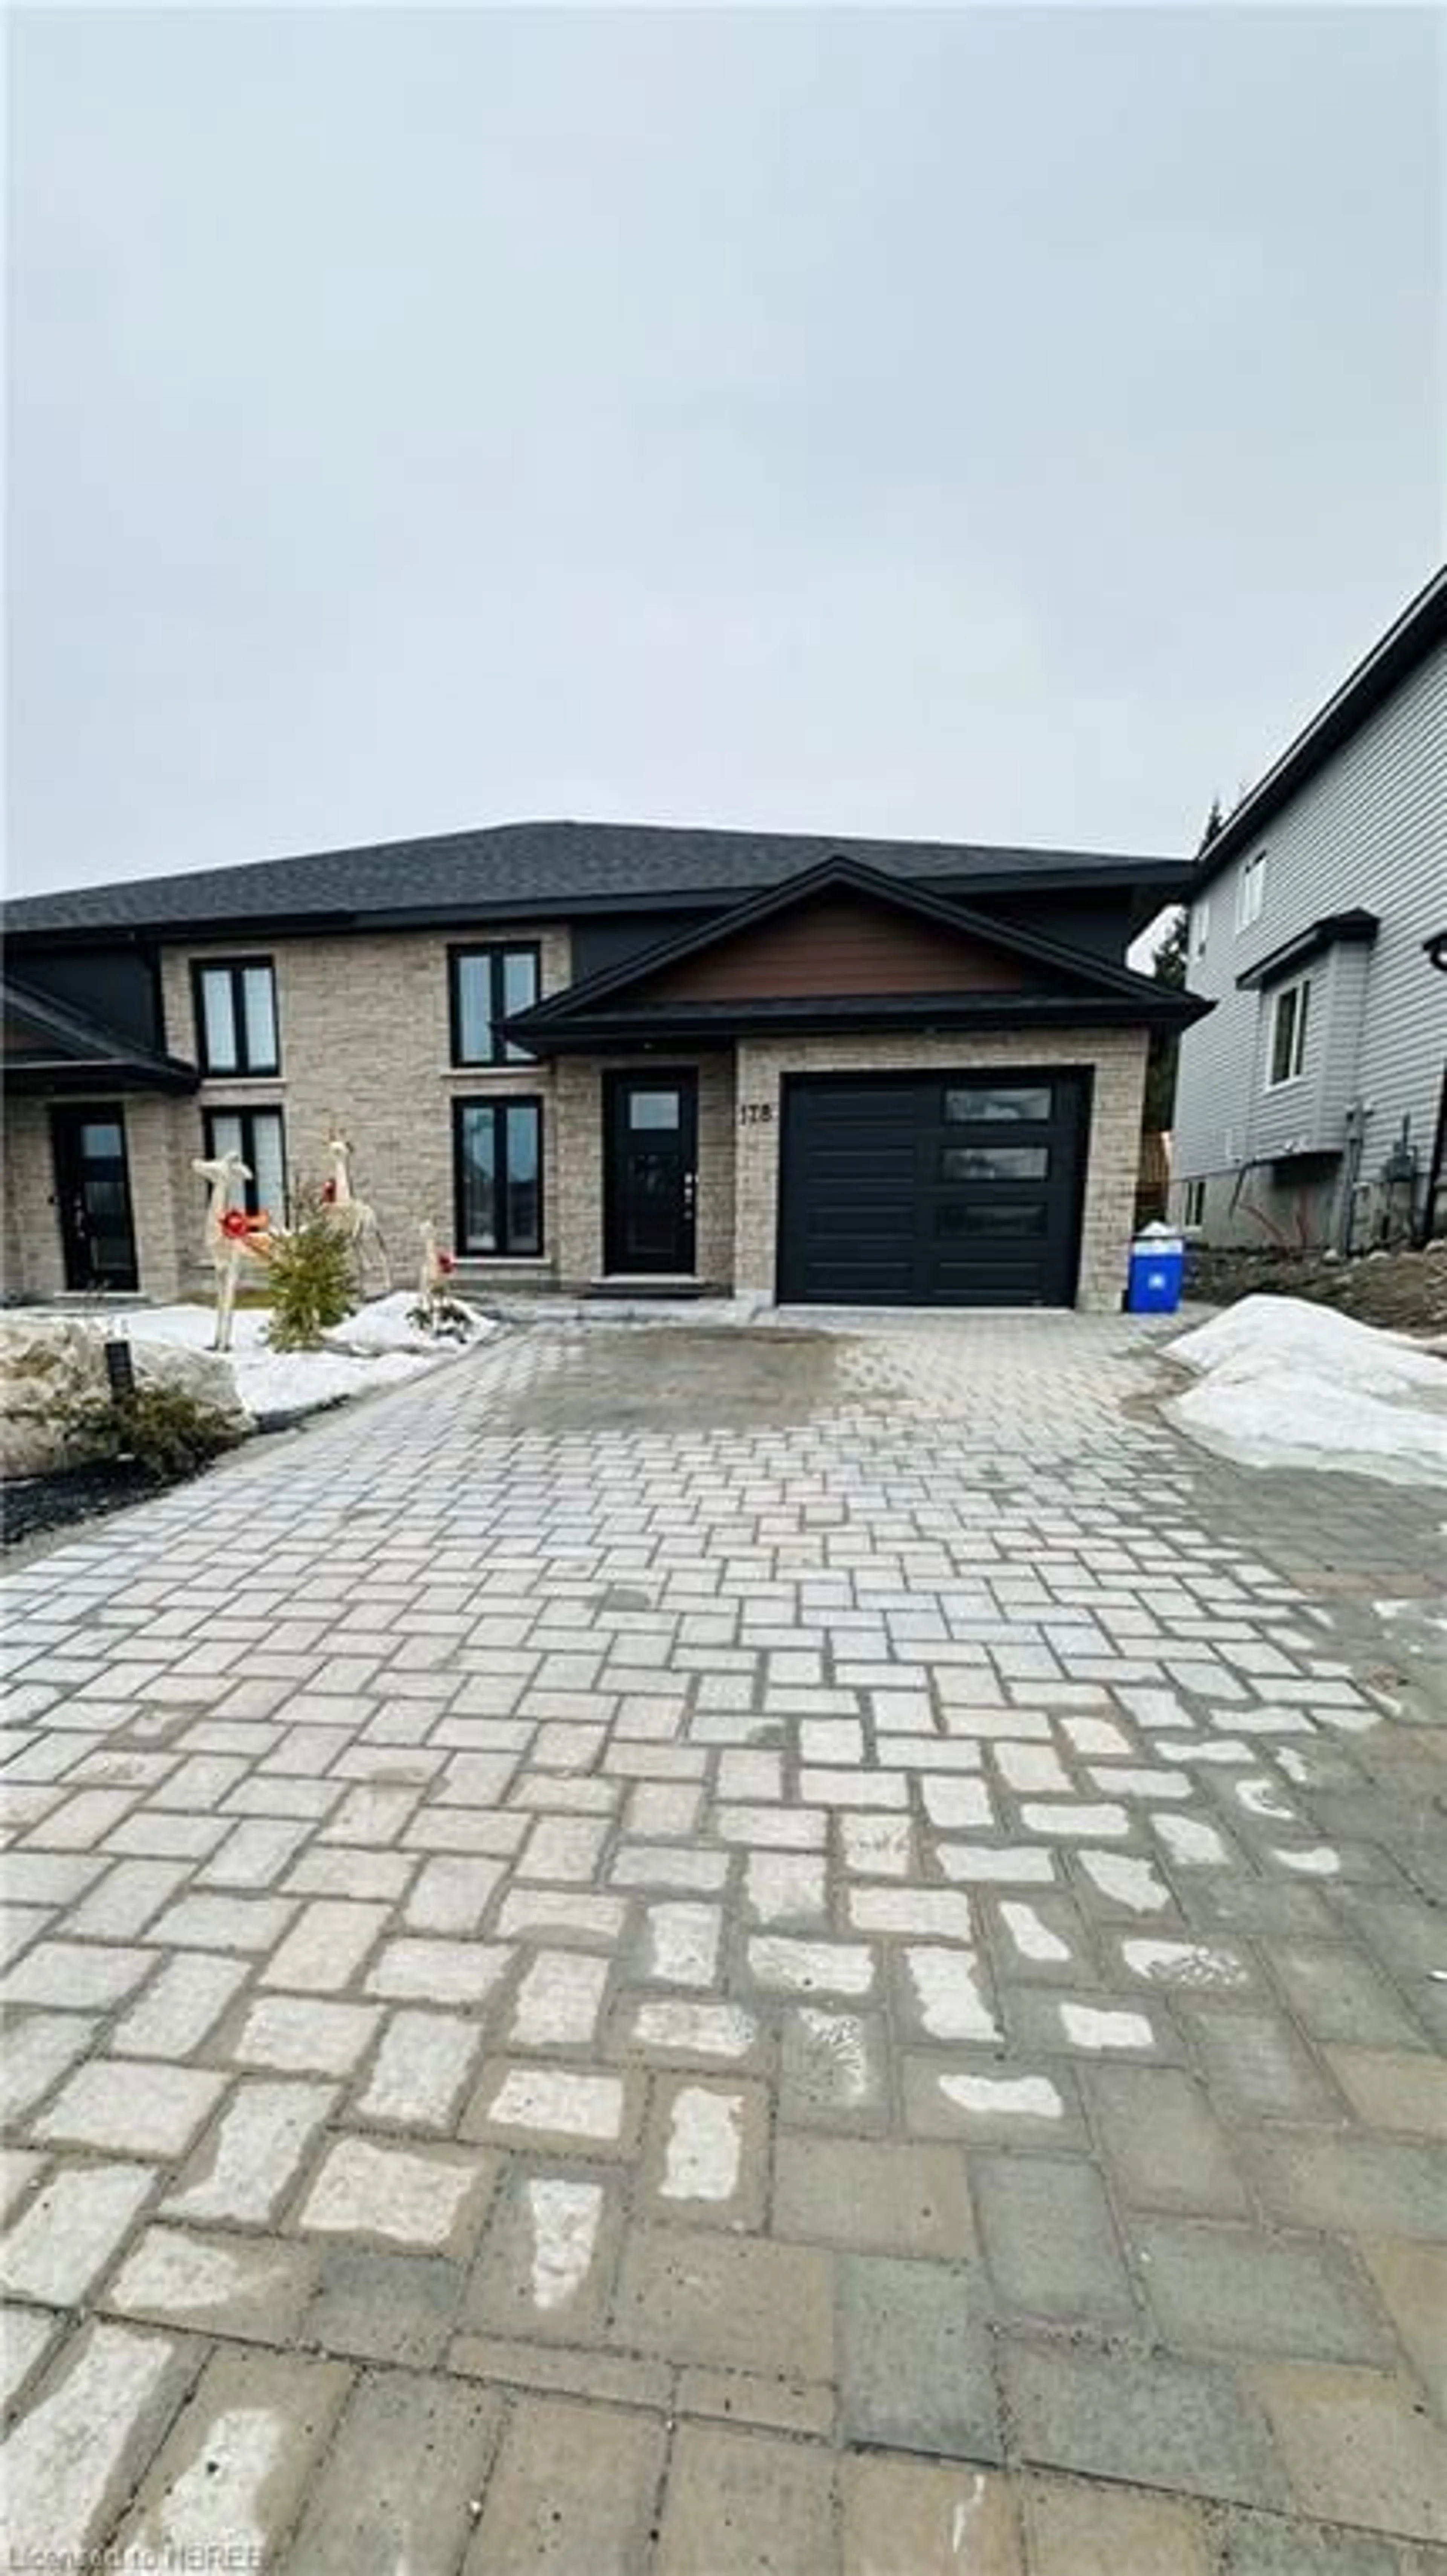 Home with brick exterior material for 178 Eclipse Cres, Sudbury Ontario P3B 0E6